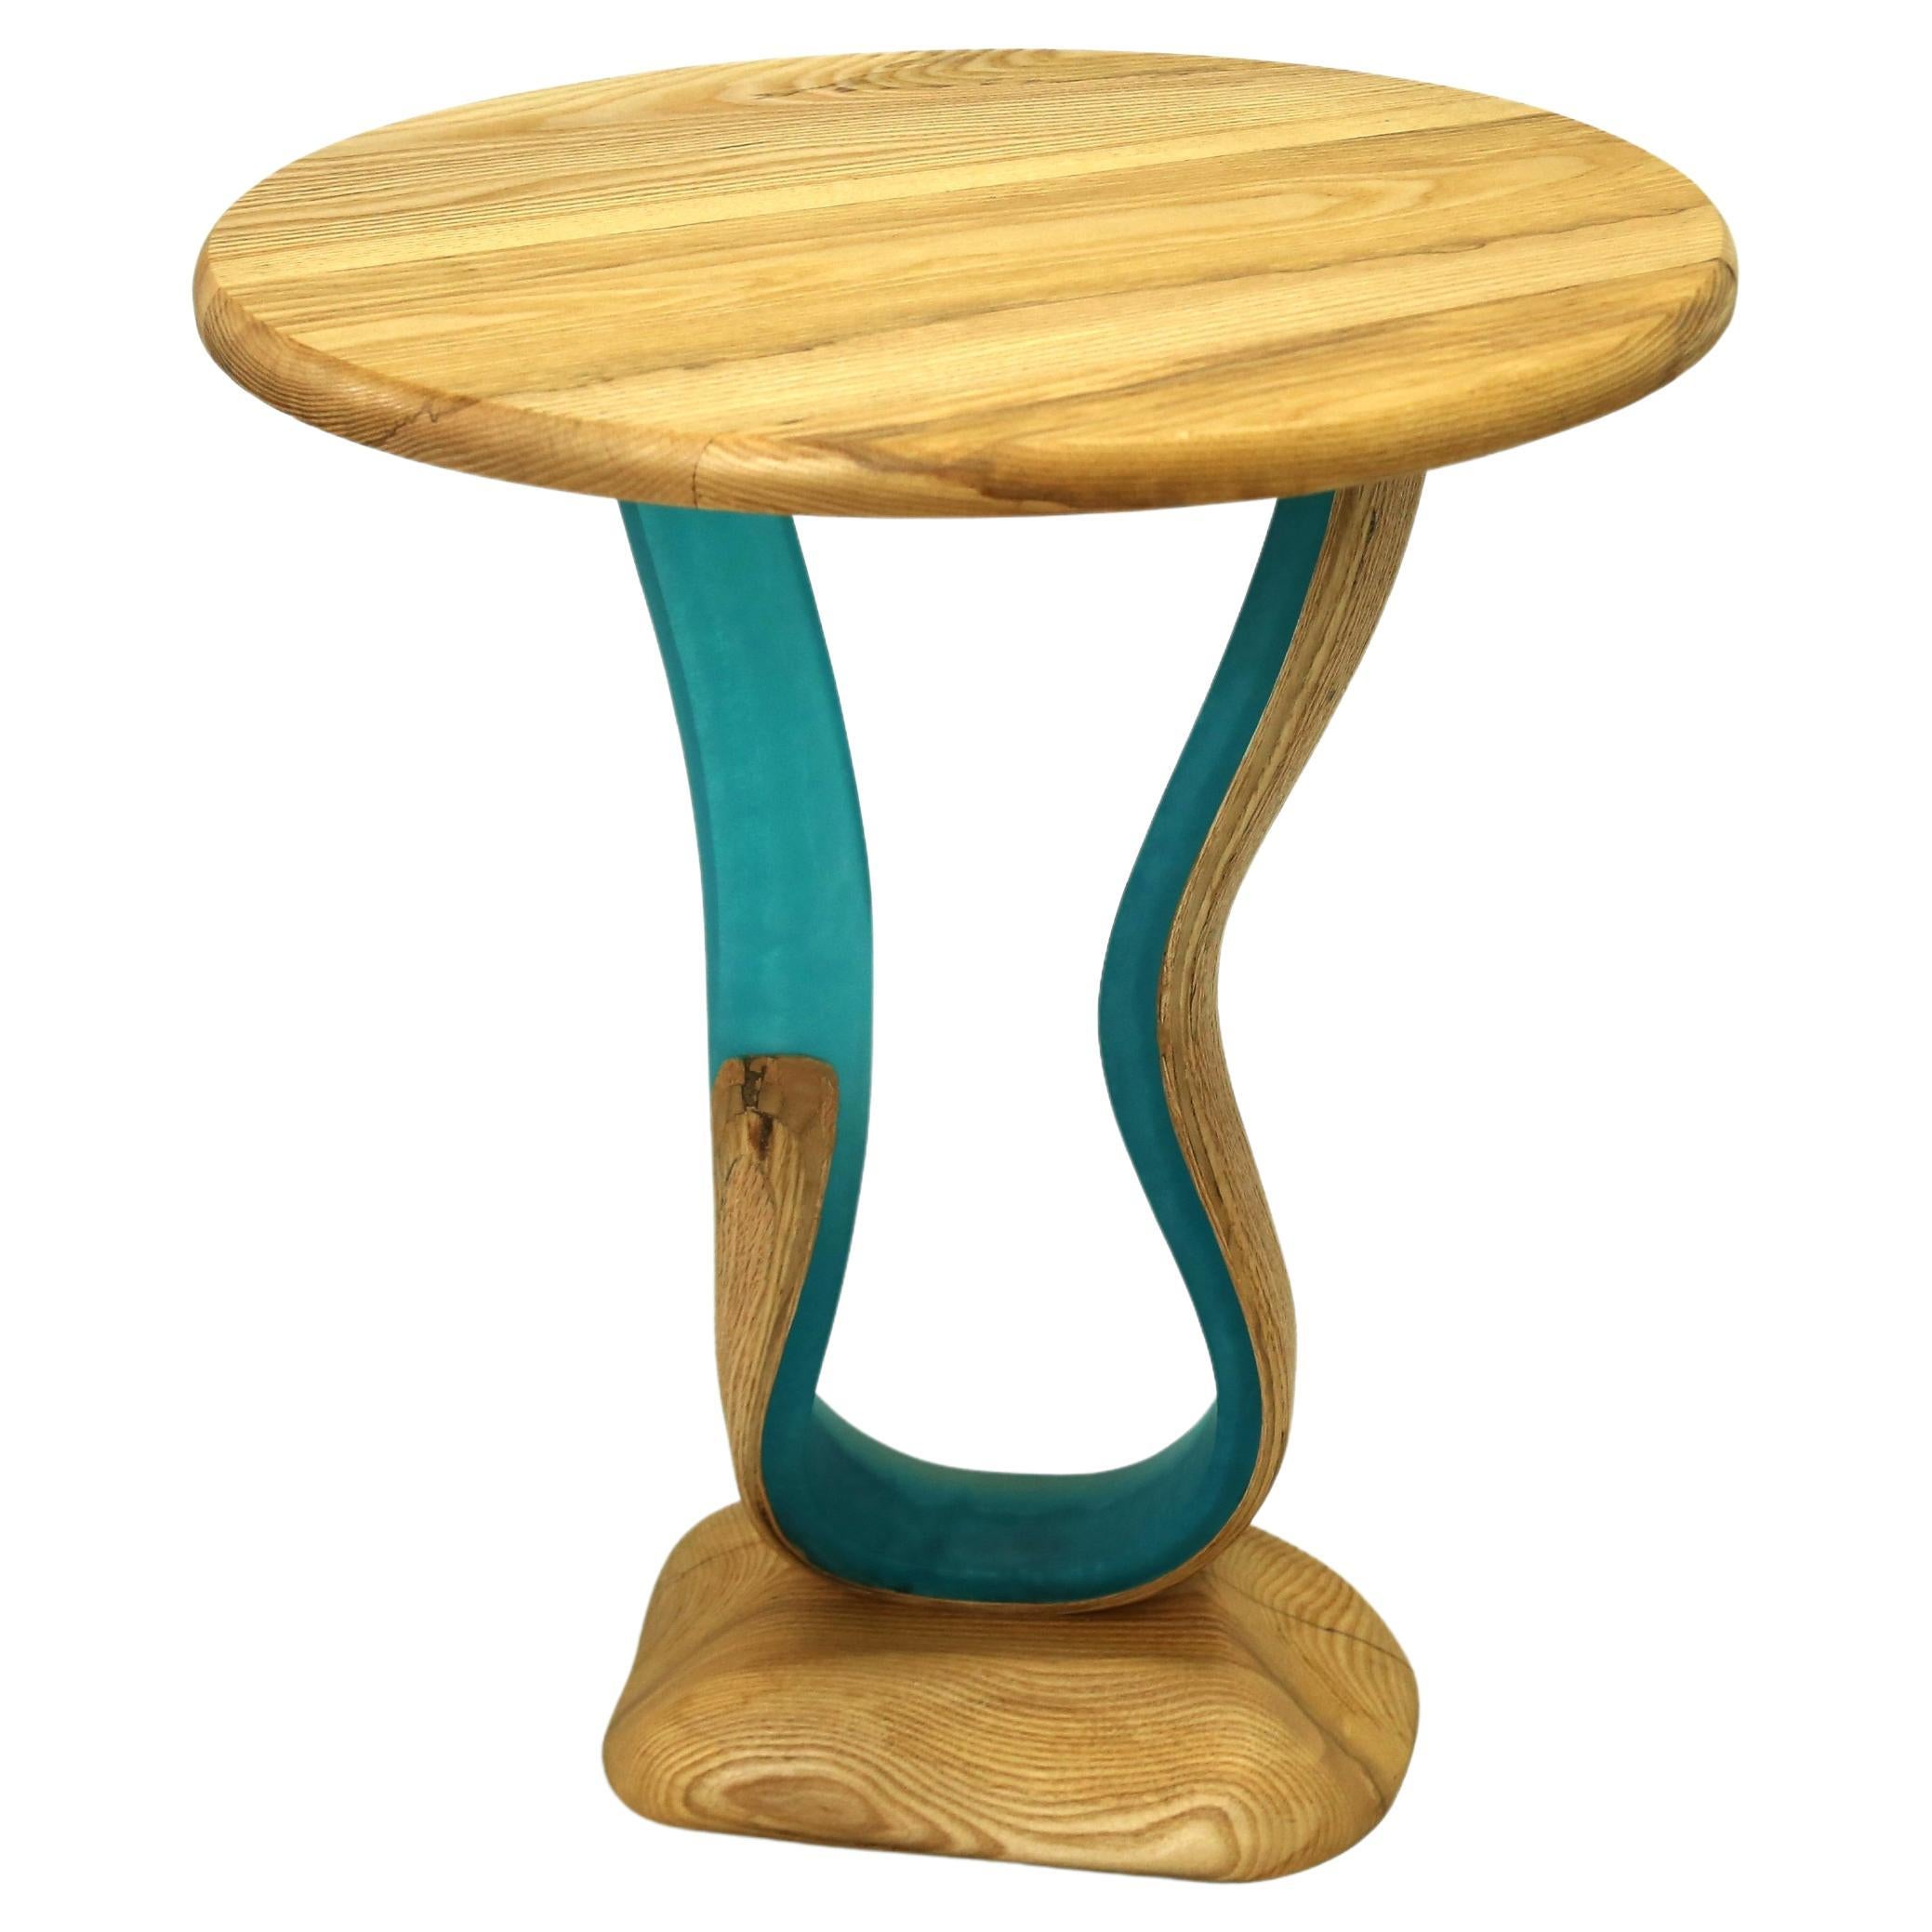 Zeta End Table by Raka Studio x Hamdi Studio - Resin and Ash Wood Table